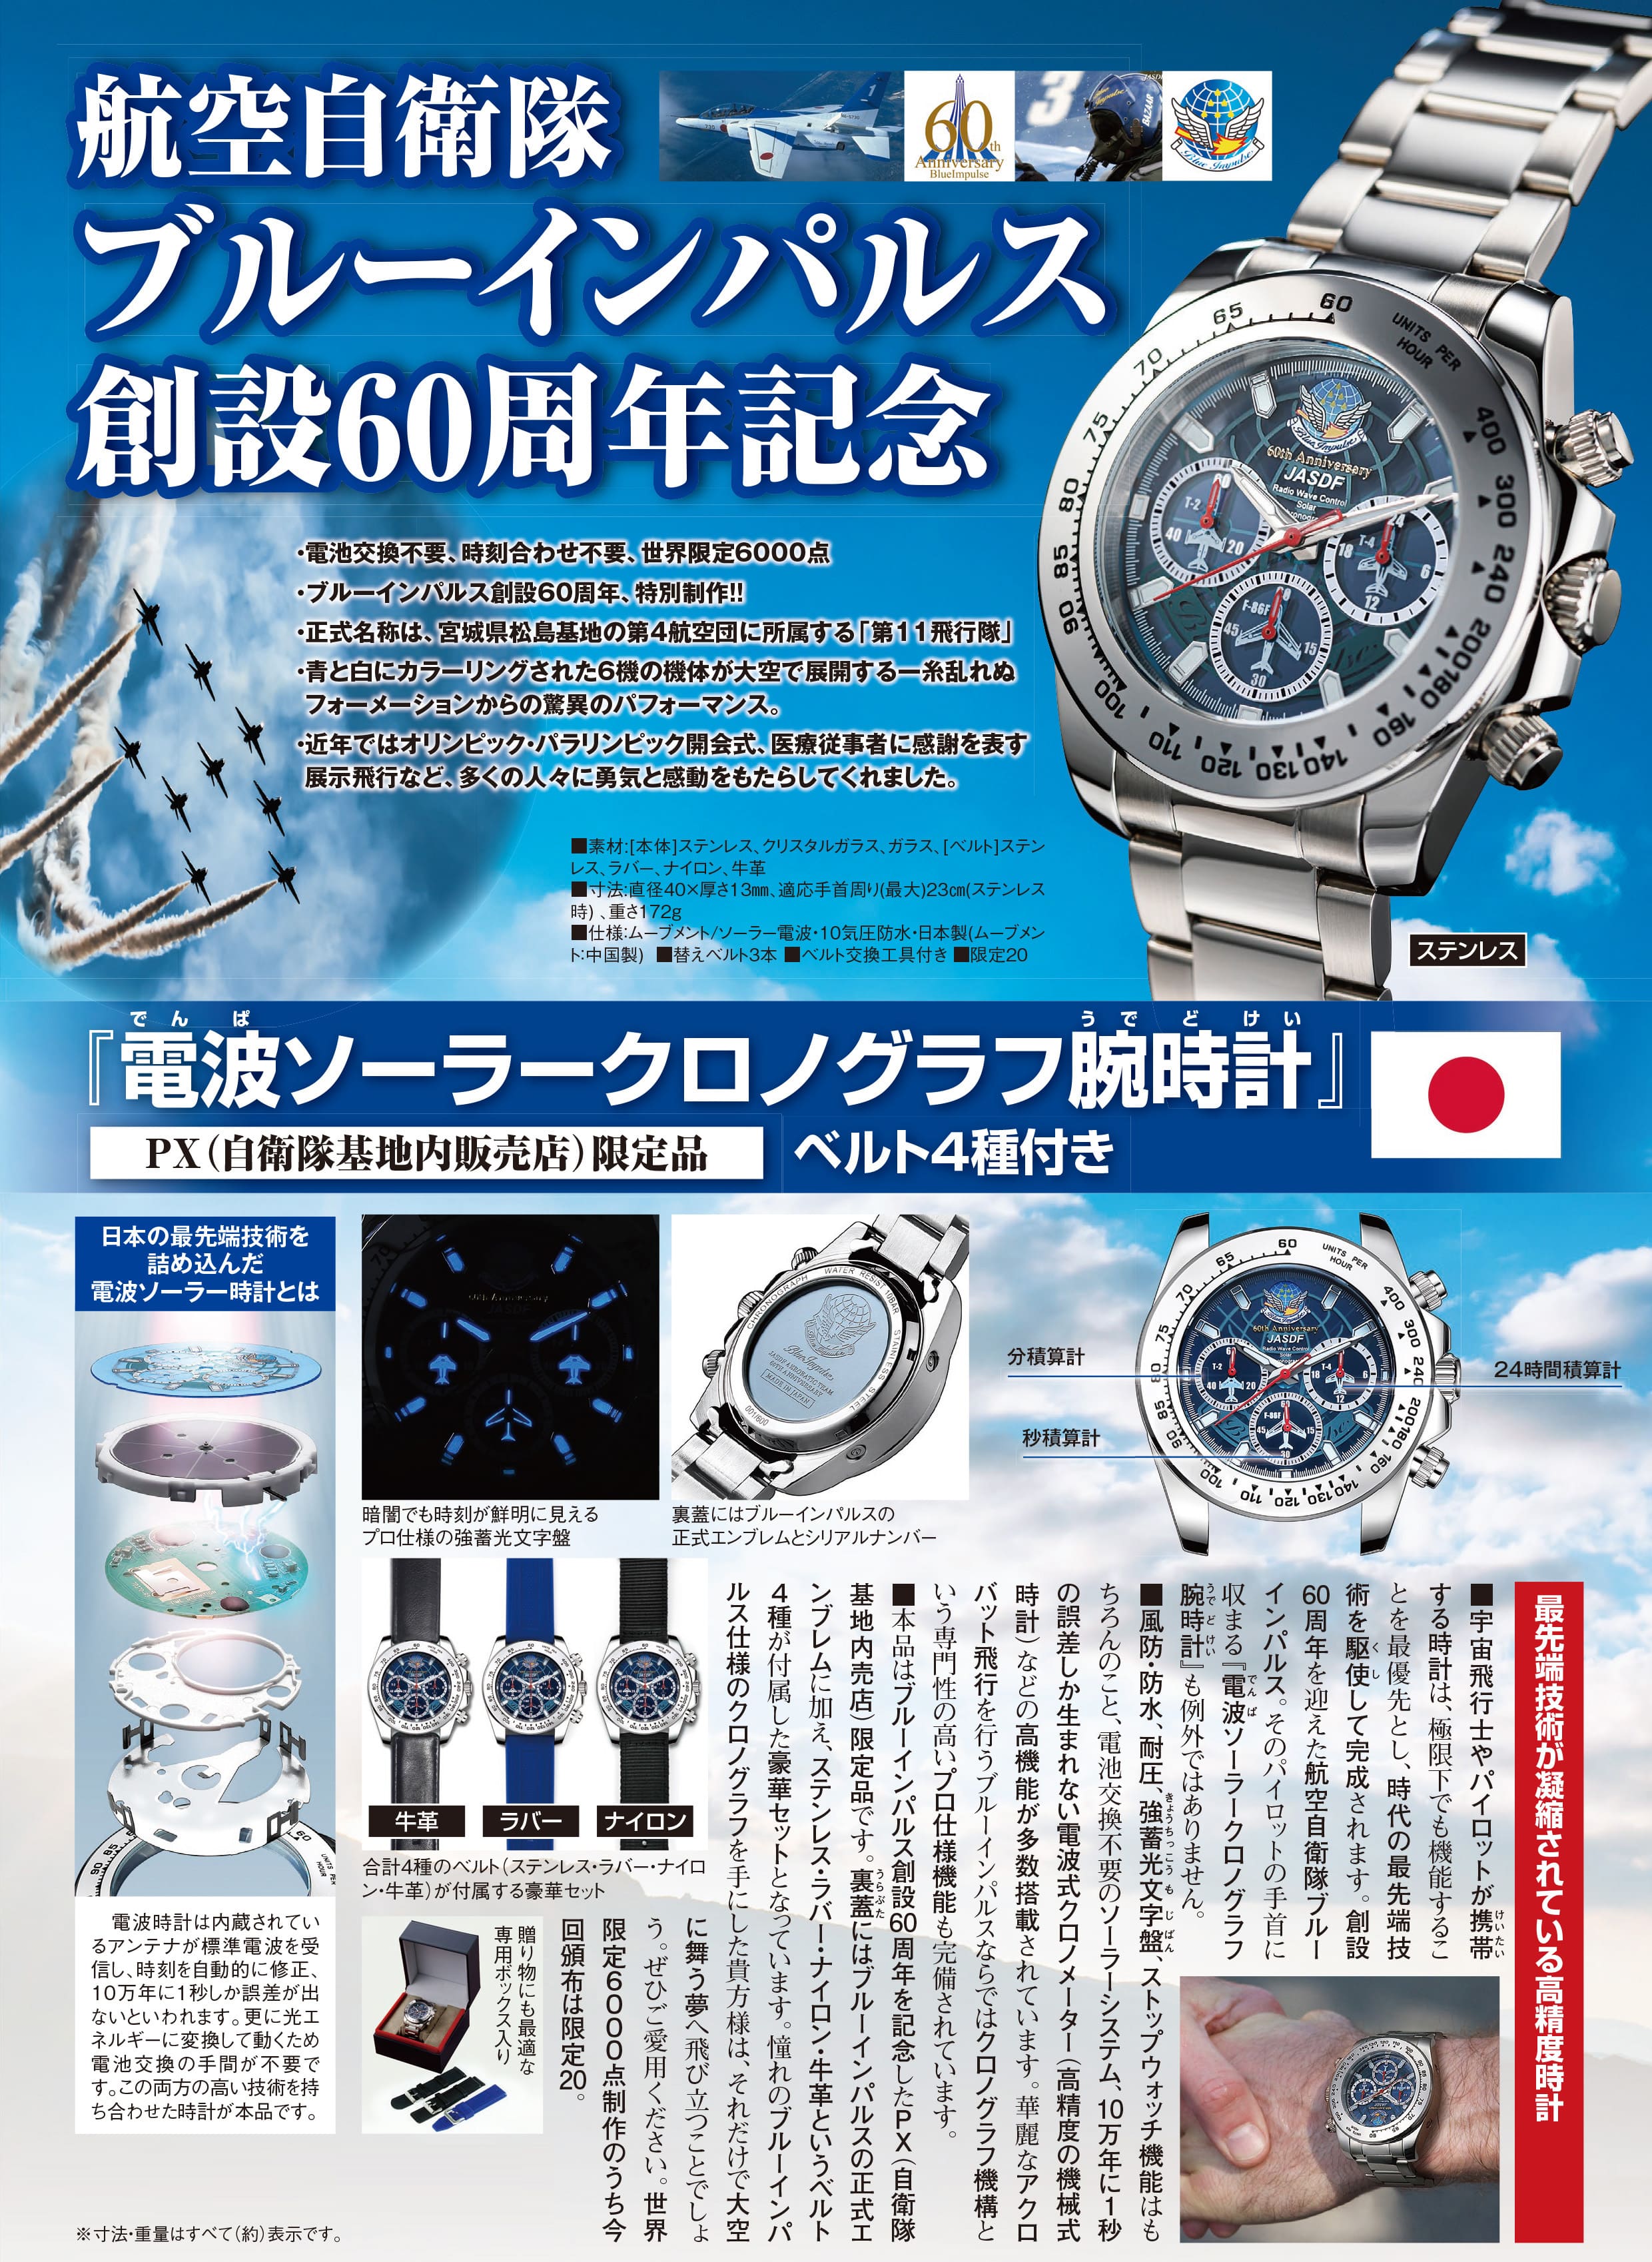 新品人気ブルーインパルス 60周年記念特製ウォッチ ソーラー電波クロノグラフ 腕時計(アナログ)